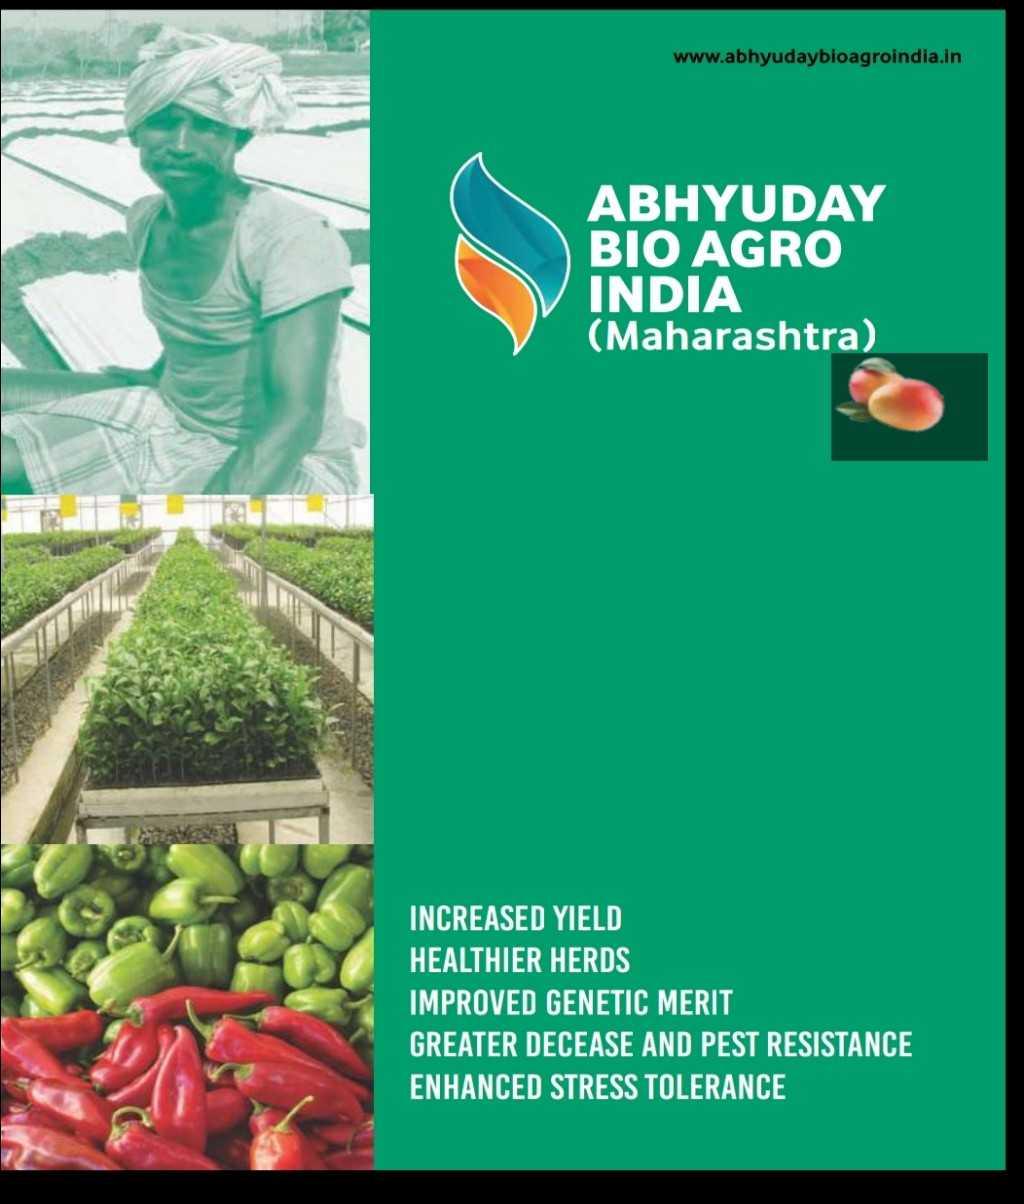 Abhyudaya Bio Agro India